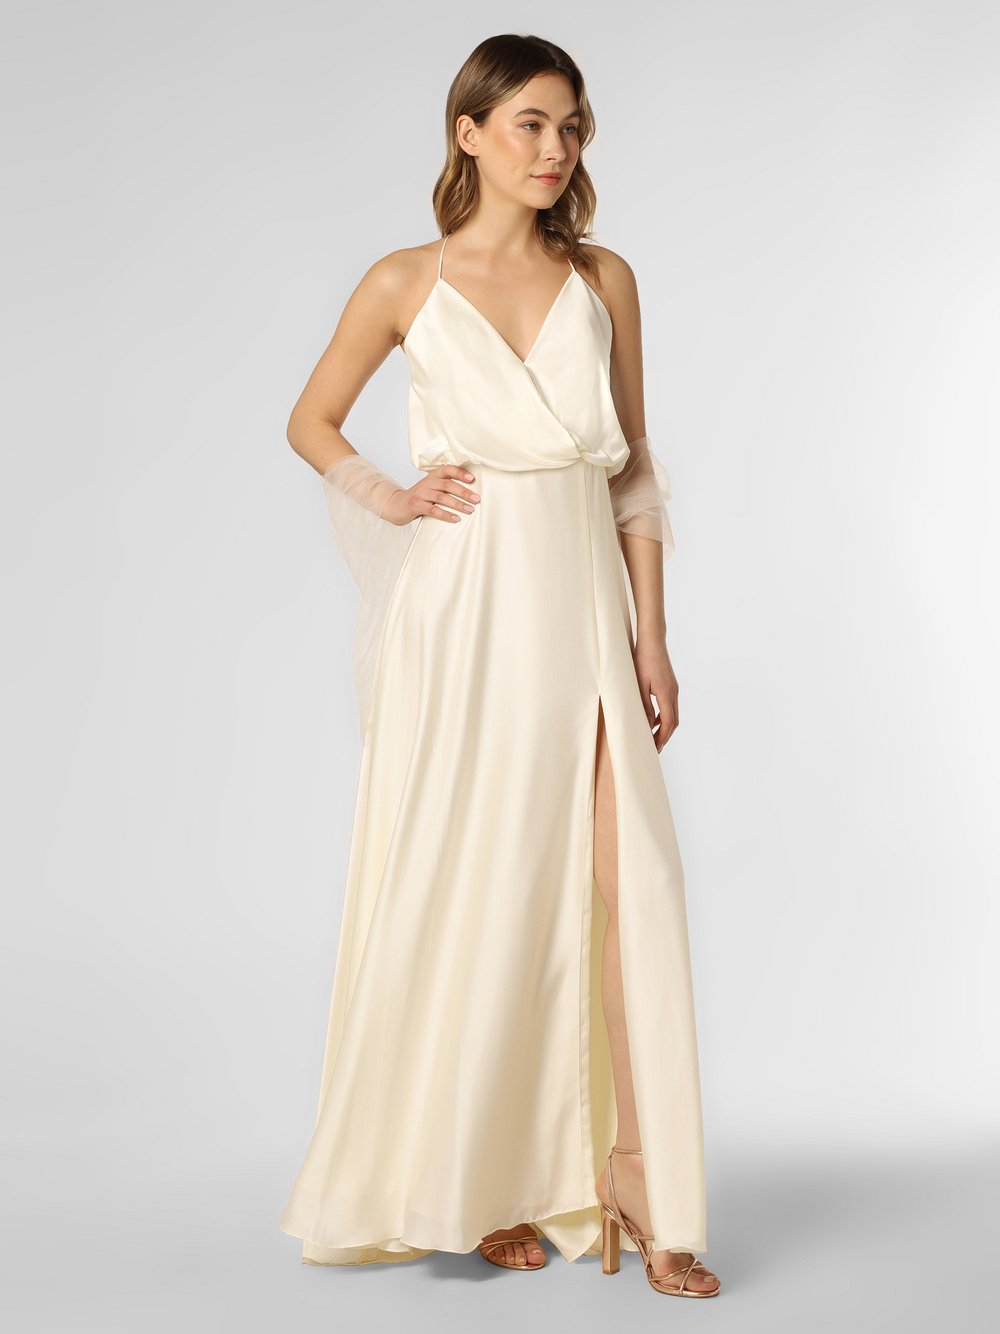 Unique - Damska sukienka wieczorowa z etolą, beżowy|biały